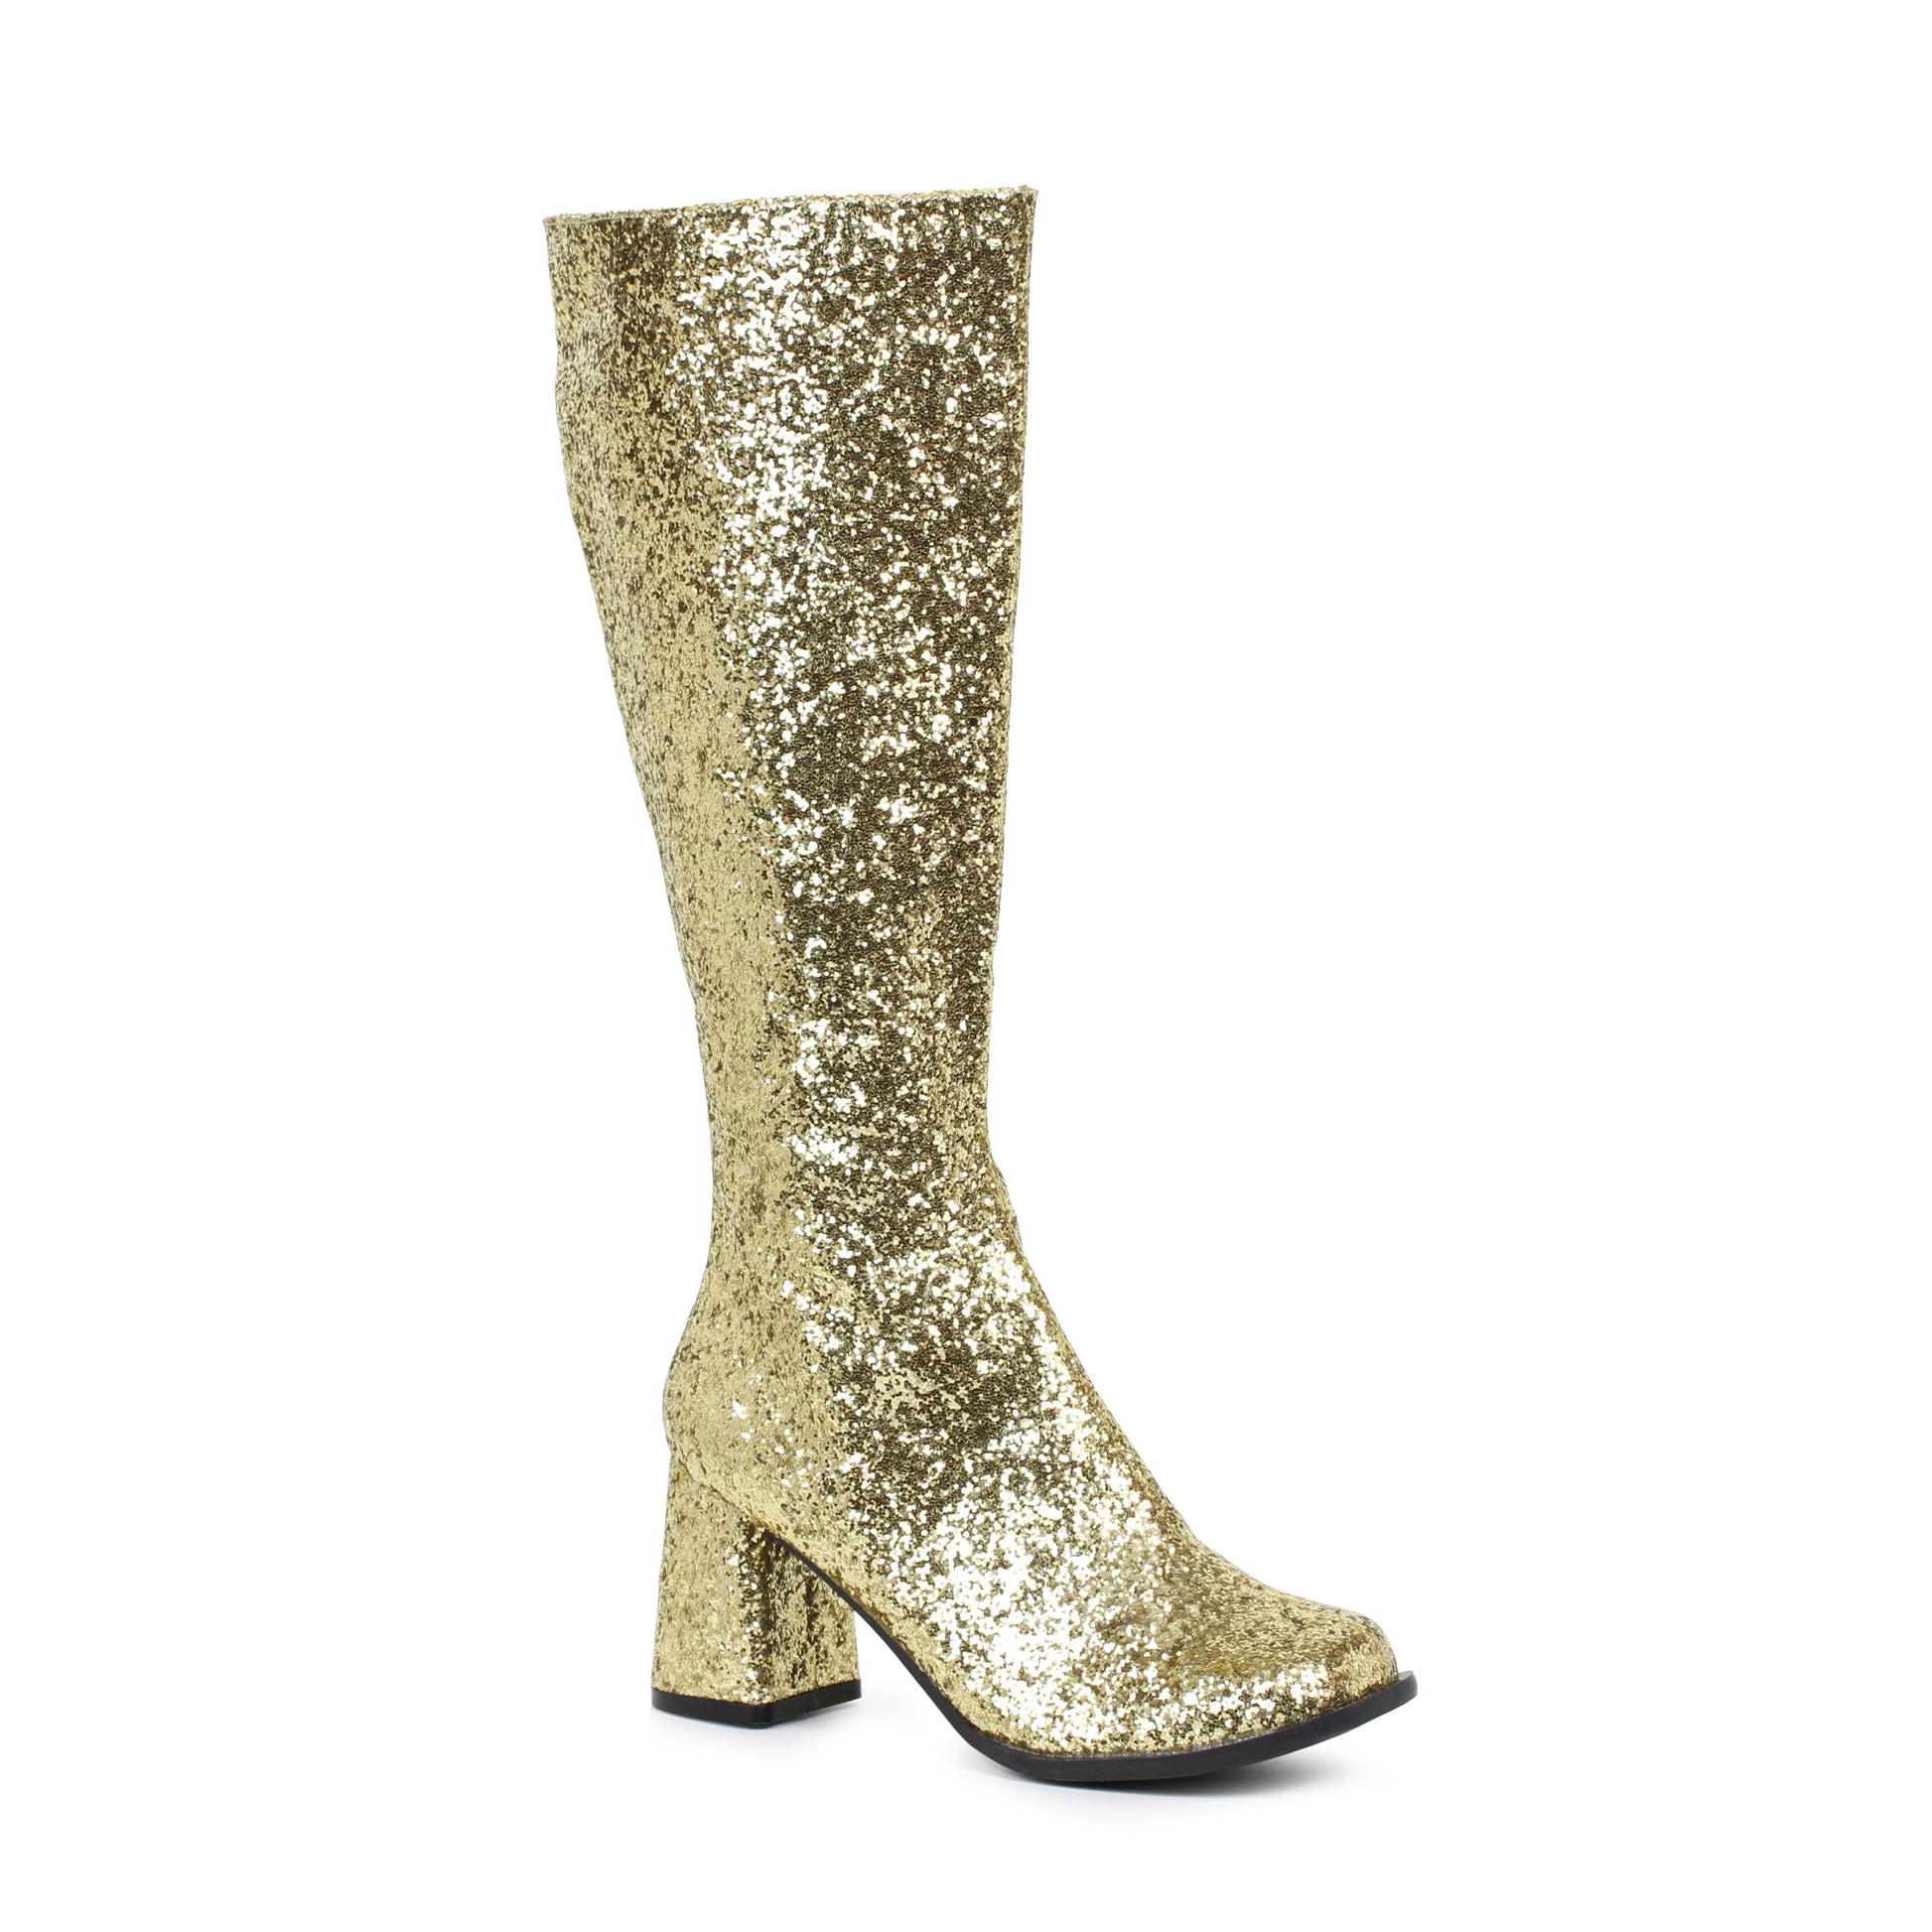 GOGO-G Ellie Shoes 3" Heel Glitter Gogo Boot. W/Zipper. EXTENDED S 3 INCH HEEL KNEE HIGH